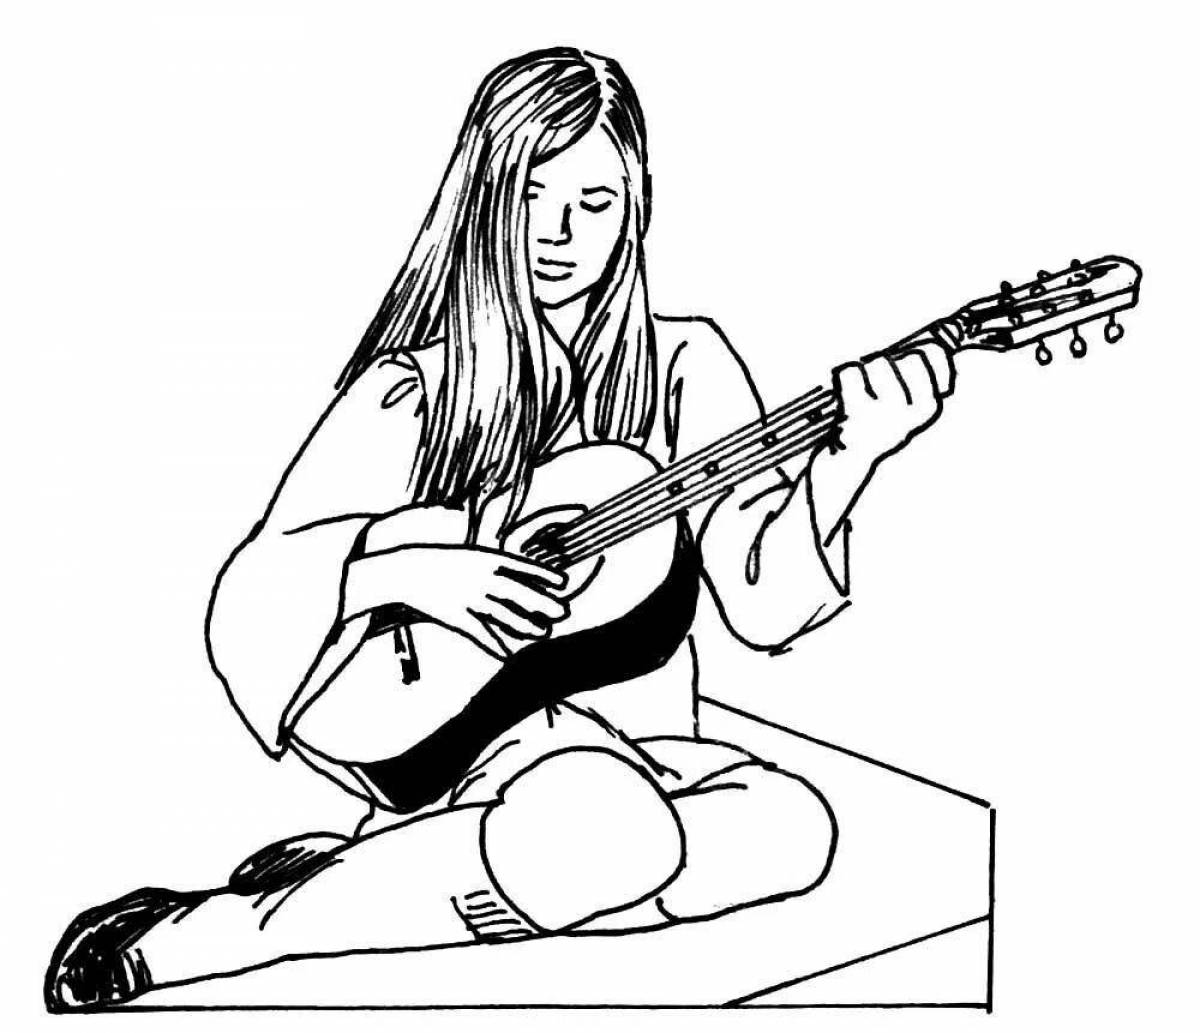 Playful guitar sketch